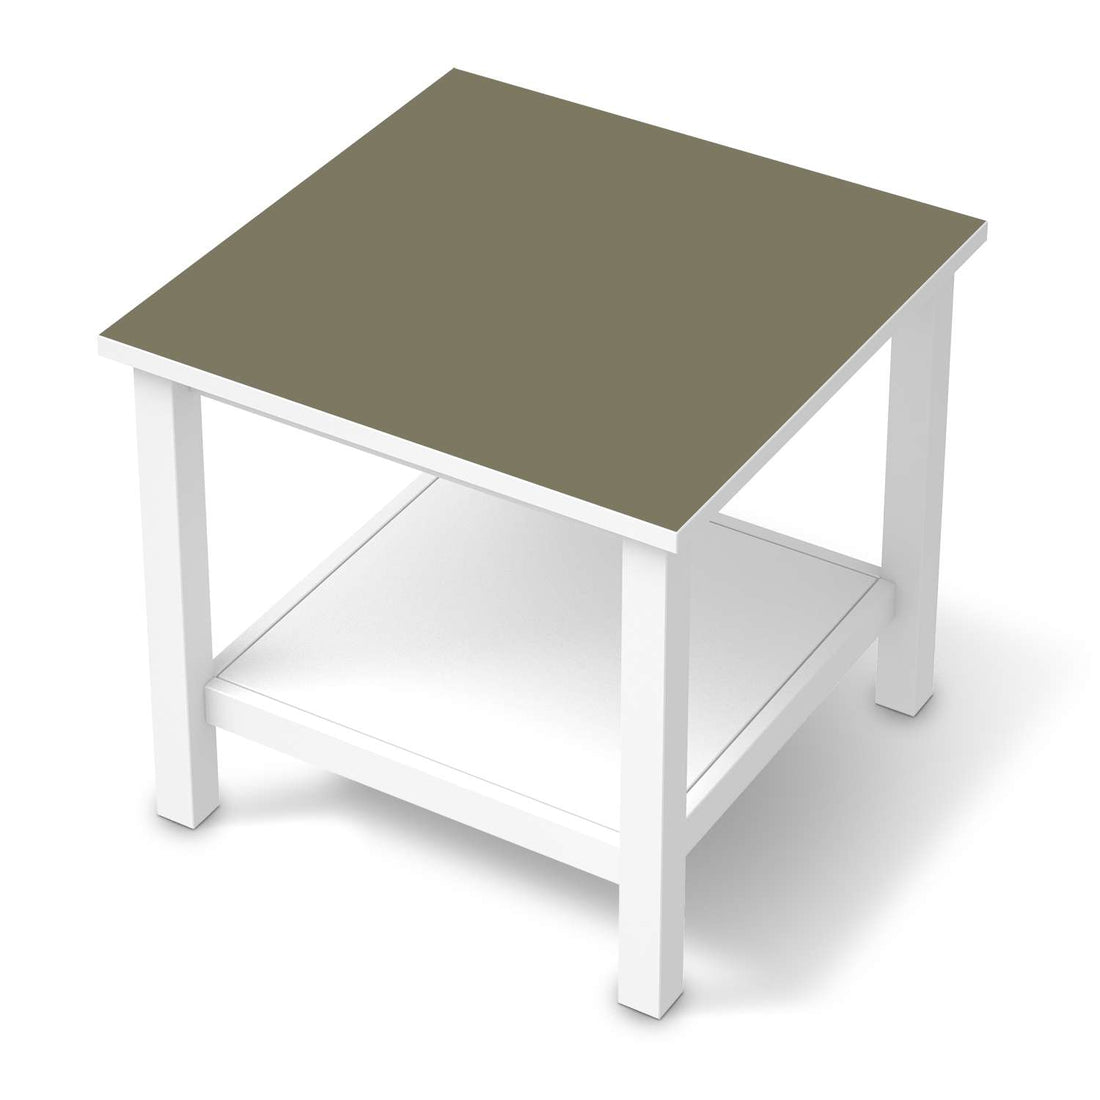 Möbel Klebefolie Braungrau Light - IKEA Hemnes Beistelltisch 55x55 cm  - weiss